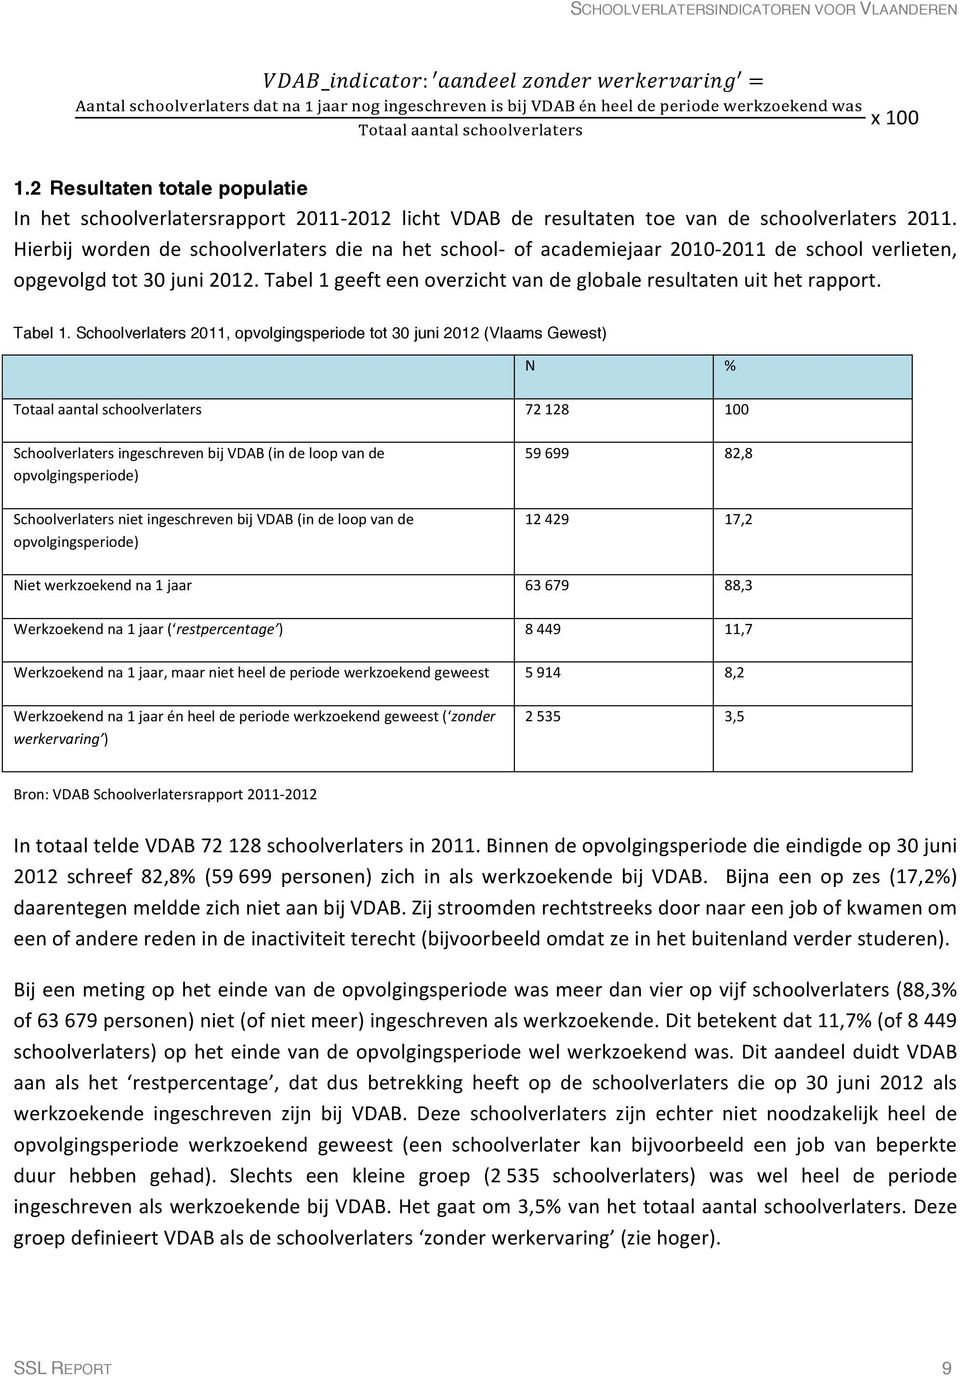 Hierbij worden de schoolverlaters die na het school- of academiejaar 2010-2011 de school verlieten, opgevolgd tot 30 juni 2012. Tabel 1 geeft een overzicht van de globale resultaten uit het rapport.